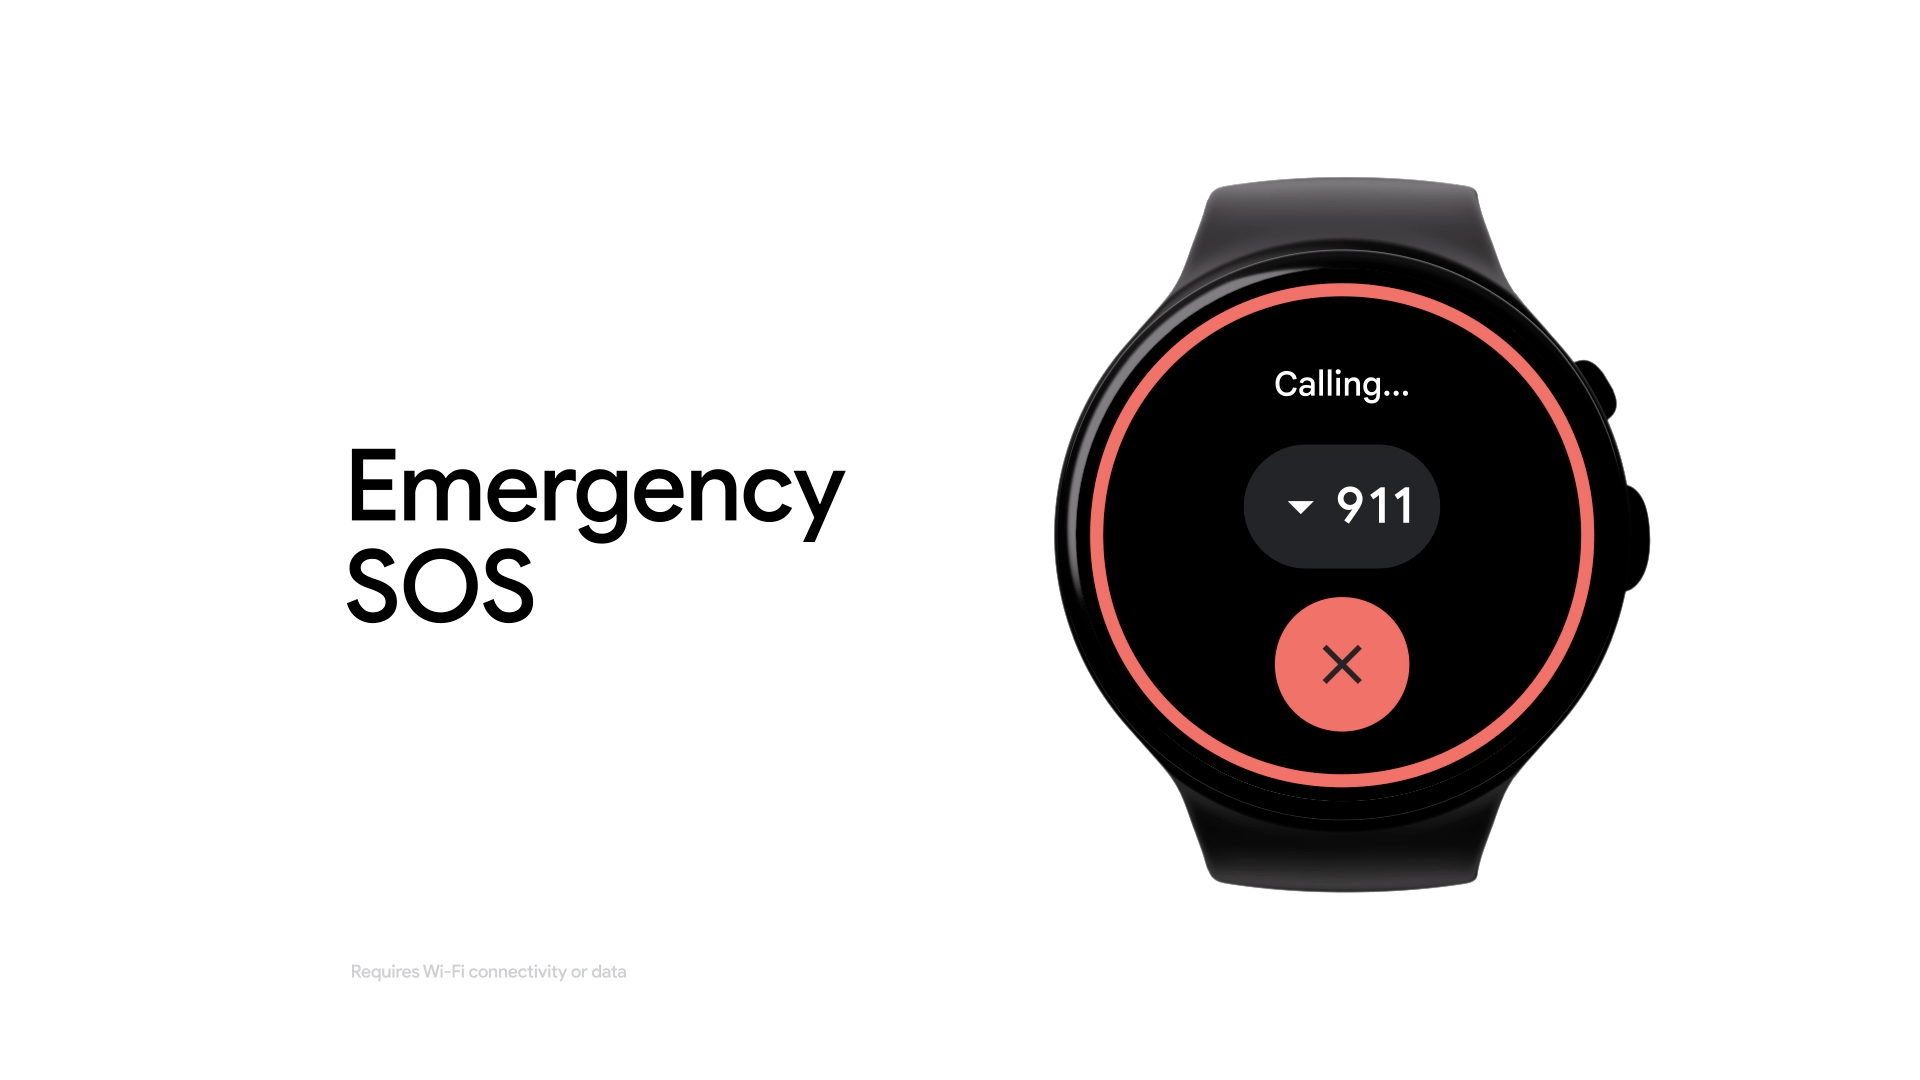 L'écran d'une montre illustre la fonction SOS d'urgence. Le cadran de la montre comporte le contour d'un cercle rouge qui décompte le temps avant qu'un appel d'urgence ne soit passé directement depuis la montre. Dans cet exemple, le 911 est appelé.